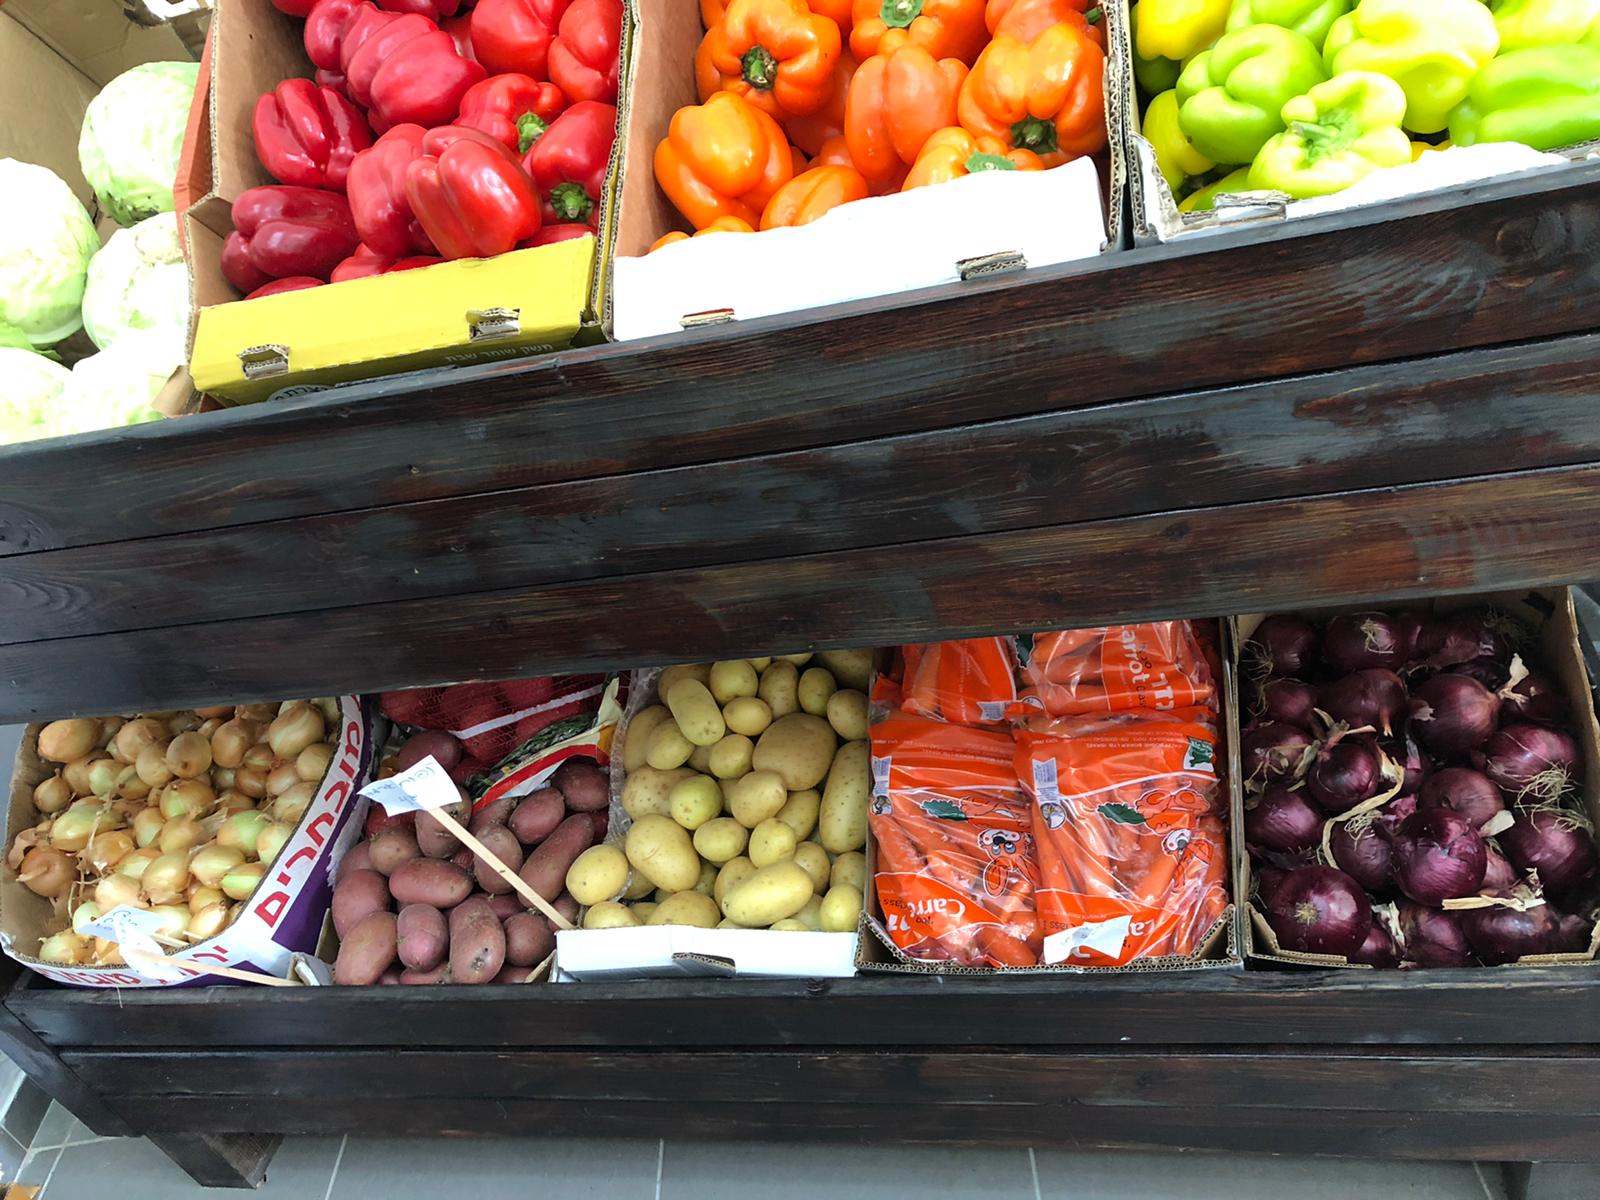 يافا: أسعار منافسة في سوق هيميت للخضار والفواكه الطازجة 